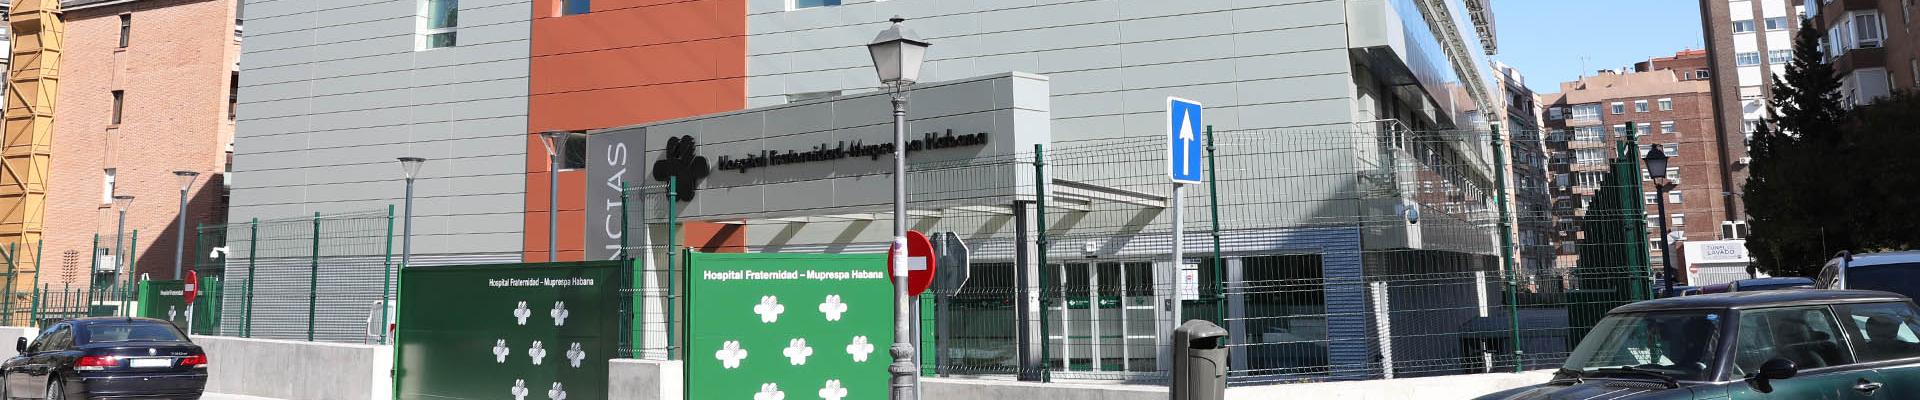 Servicio de urgencias del Hospital Fraternidad-Muprespa Habana